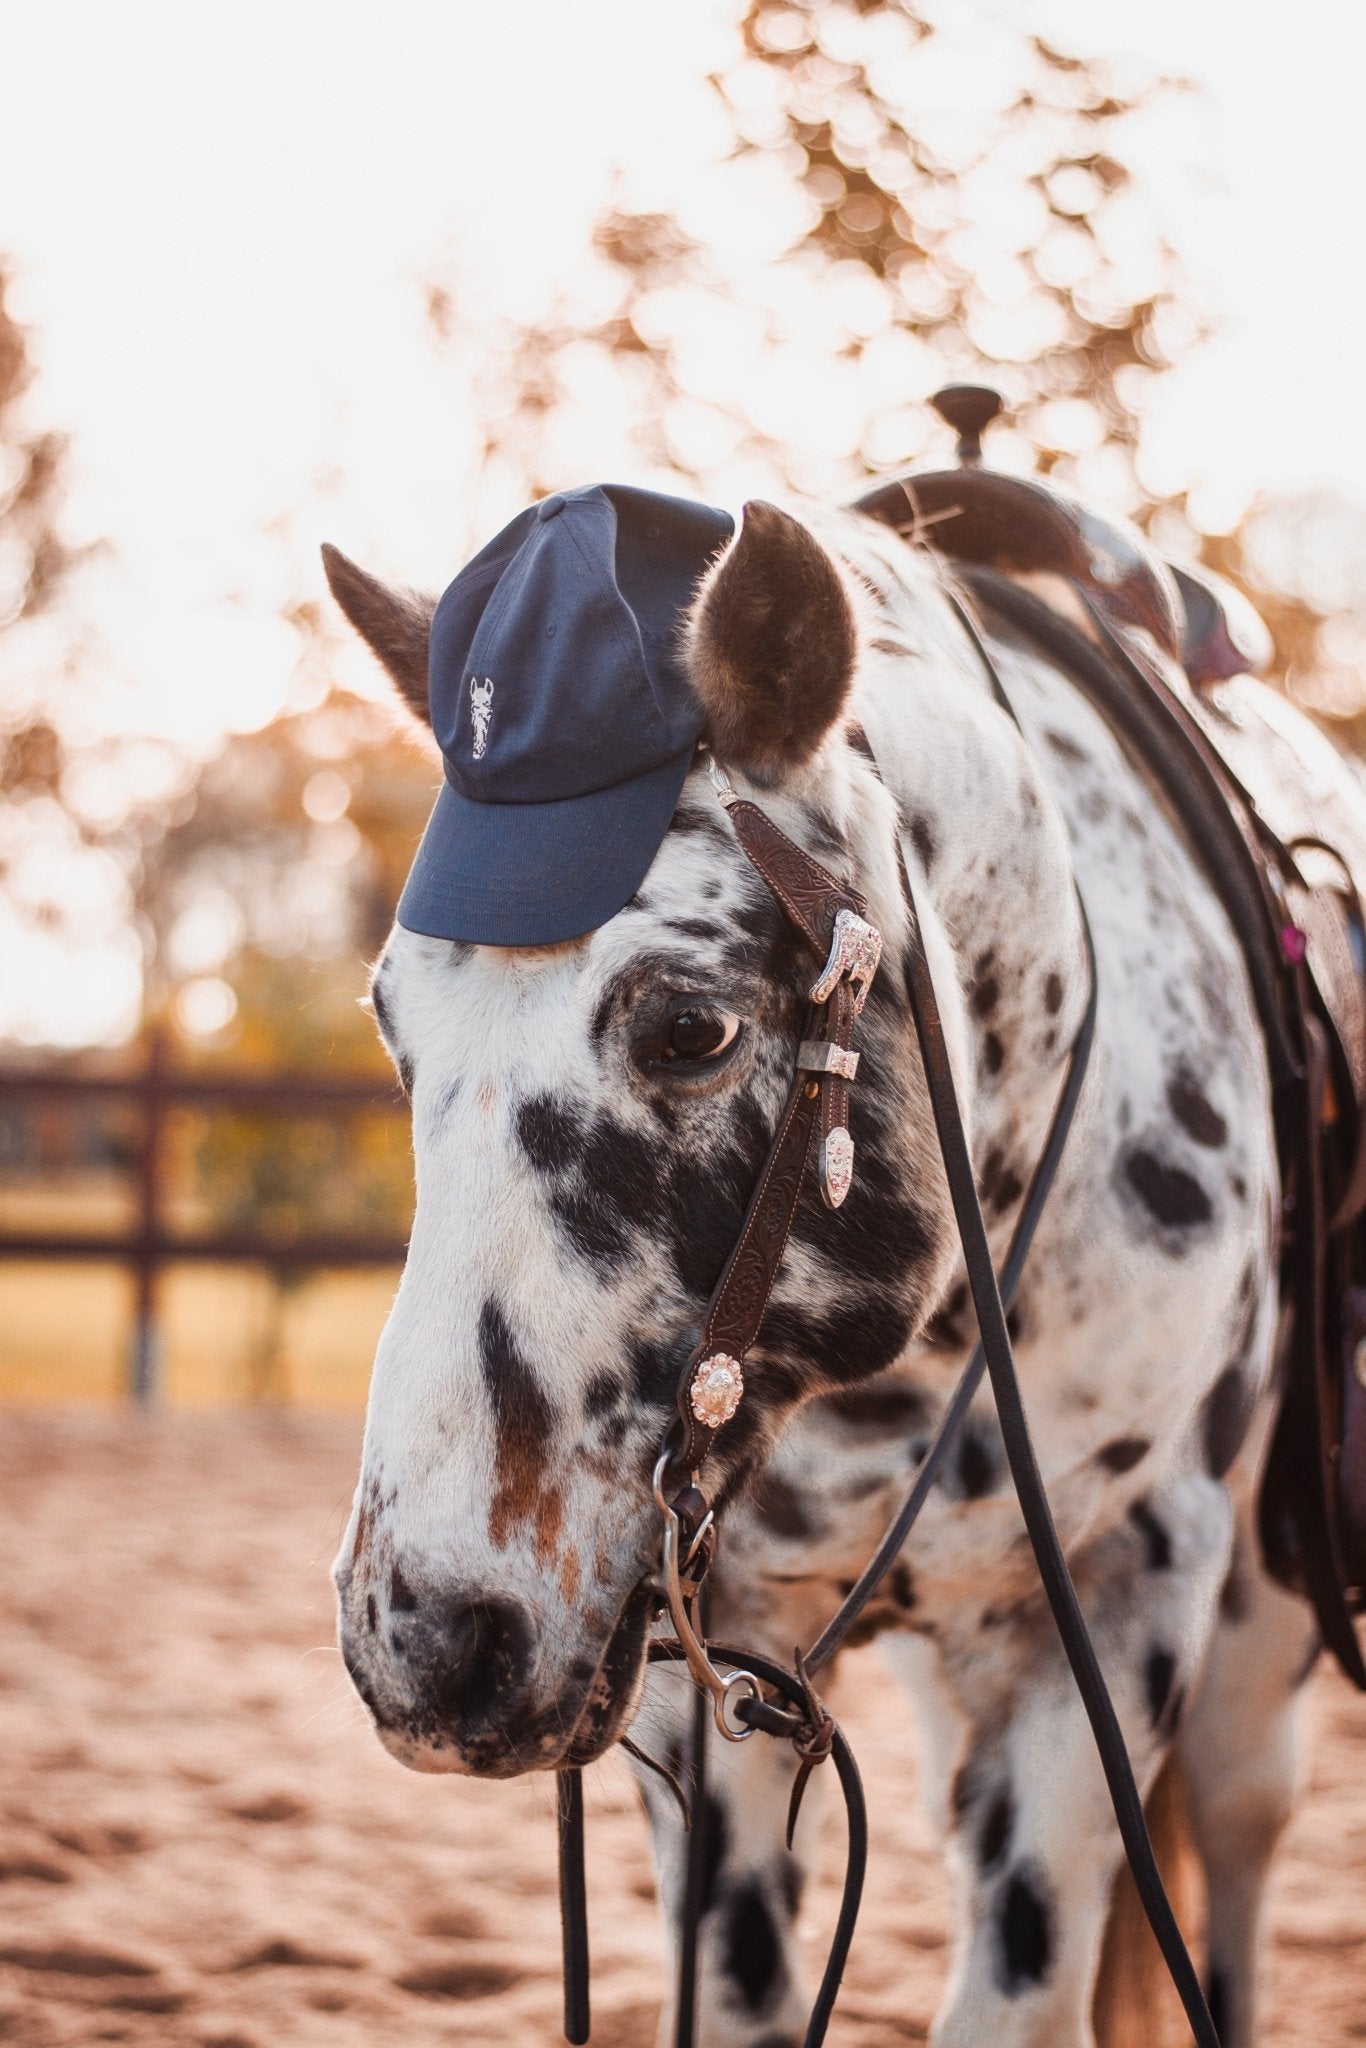 Best Buddy Bundle - Individuelle Cap und digitales Portrait nach Fotovorlage von deinem Pferd - Handvollhufeisen Shop